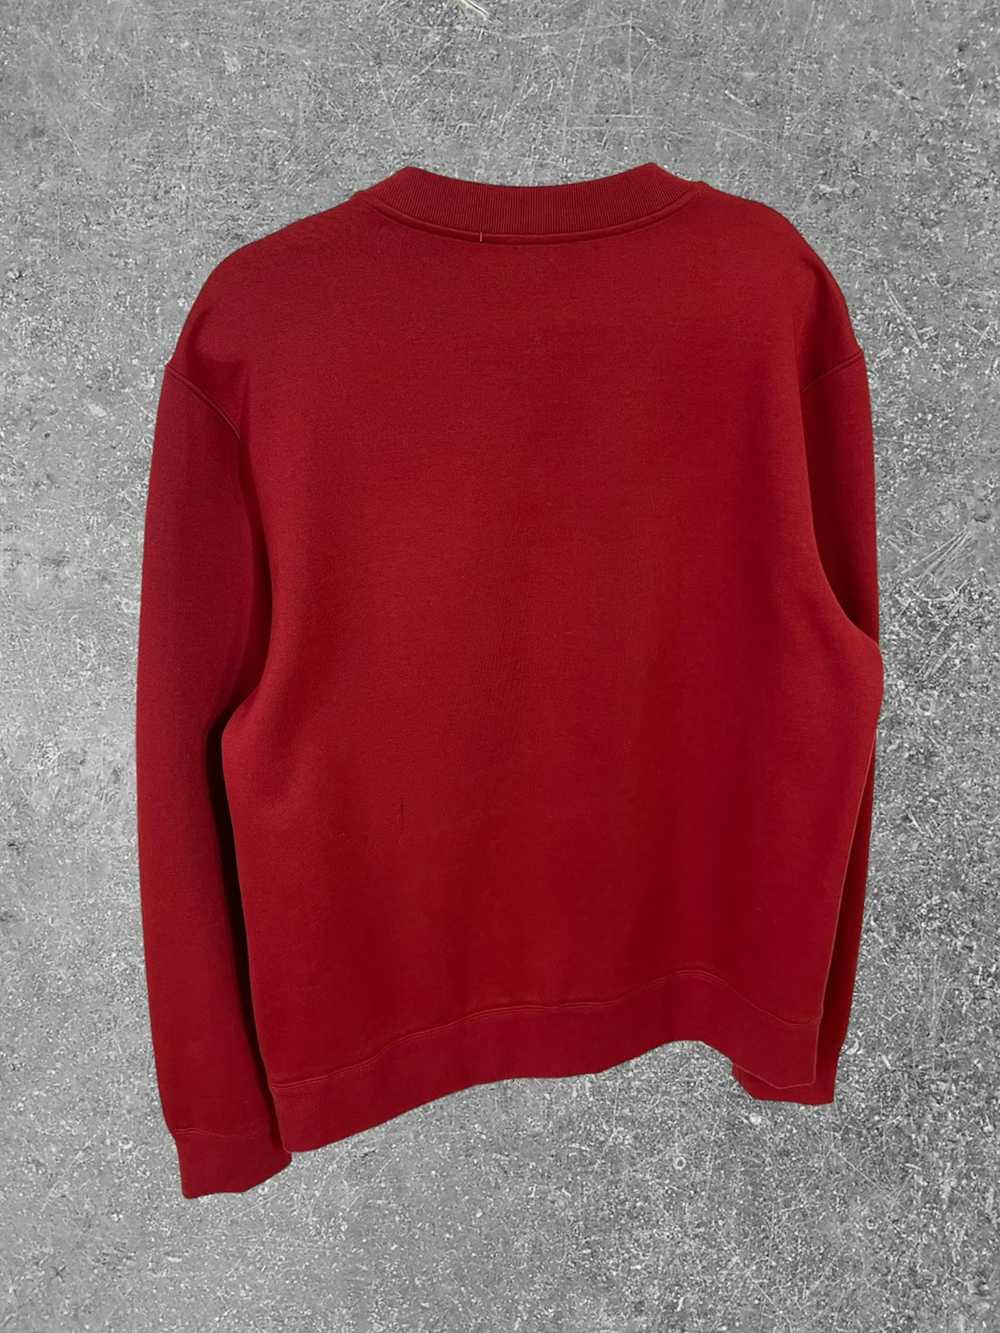 Craig Green × Moncler Moncler Craig sweatshirt - image 7